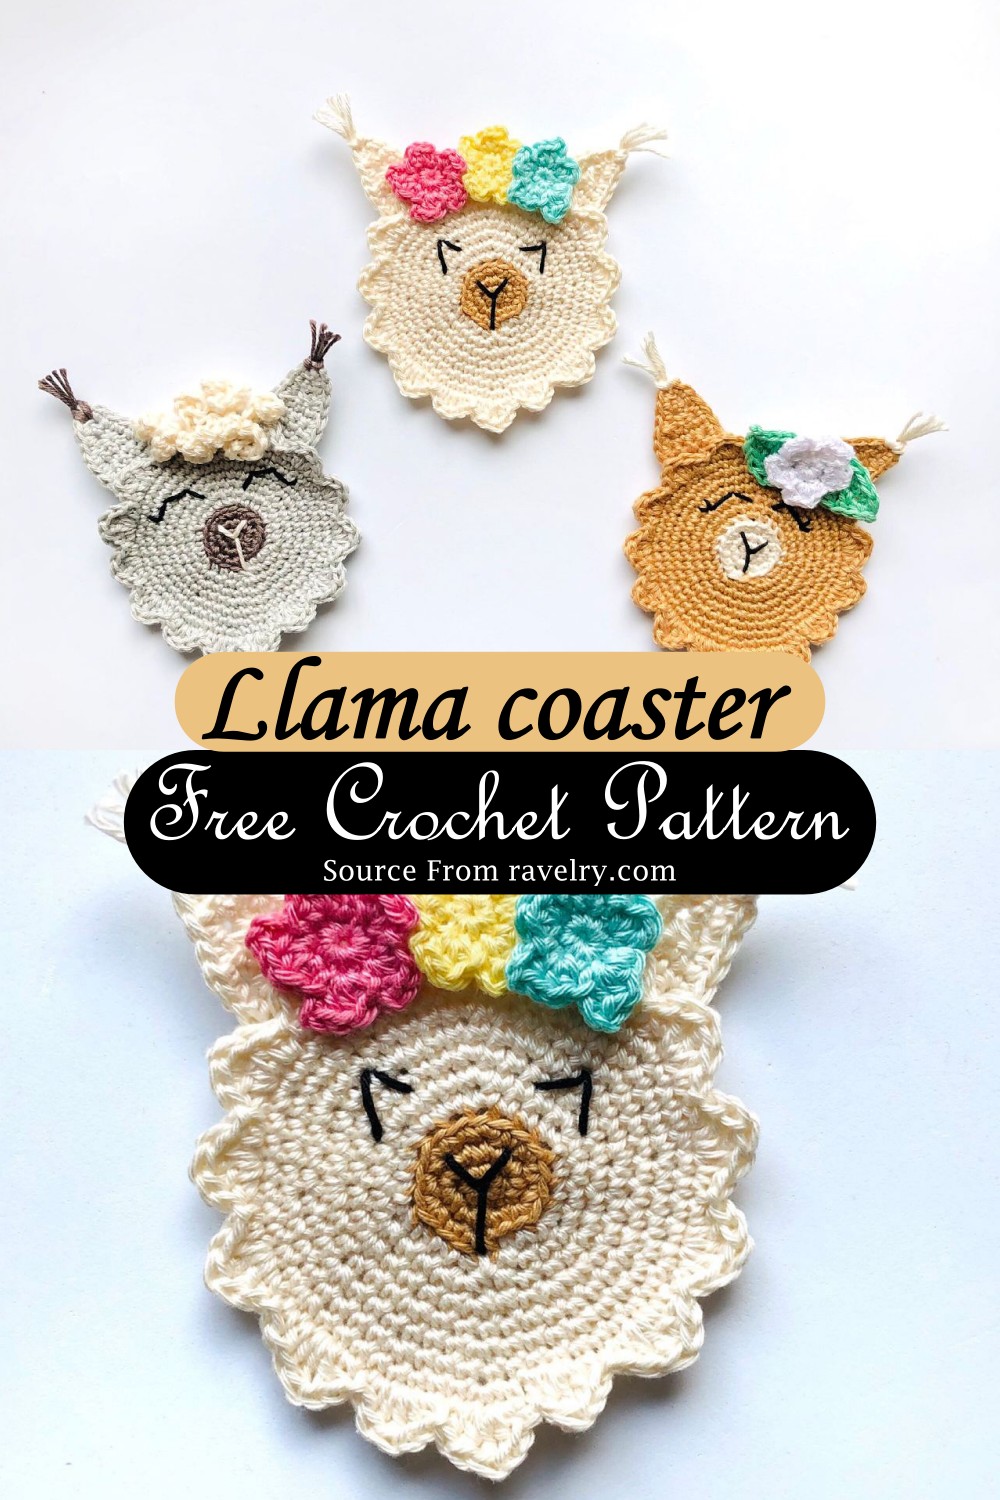 Llama coaster